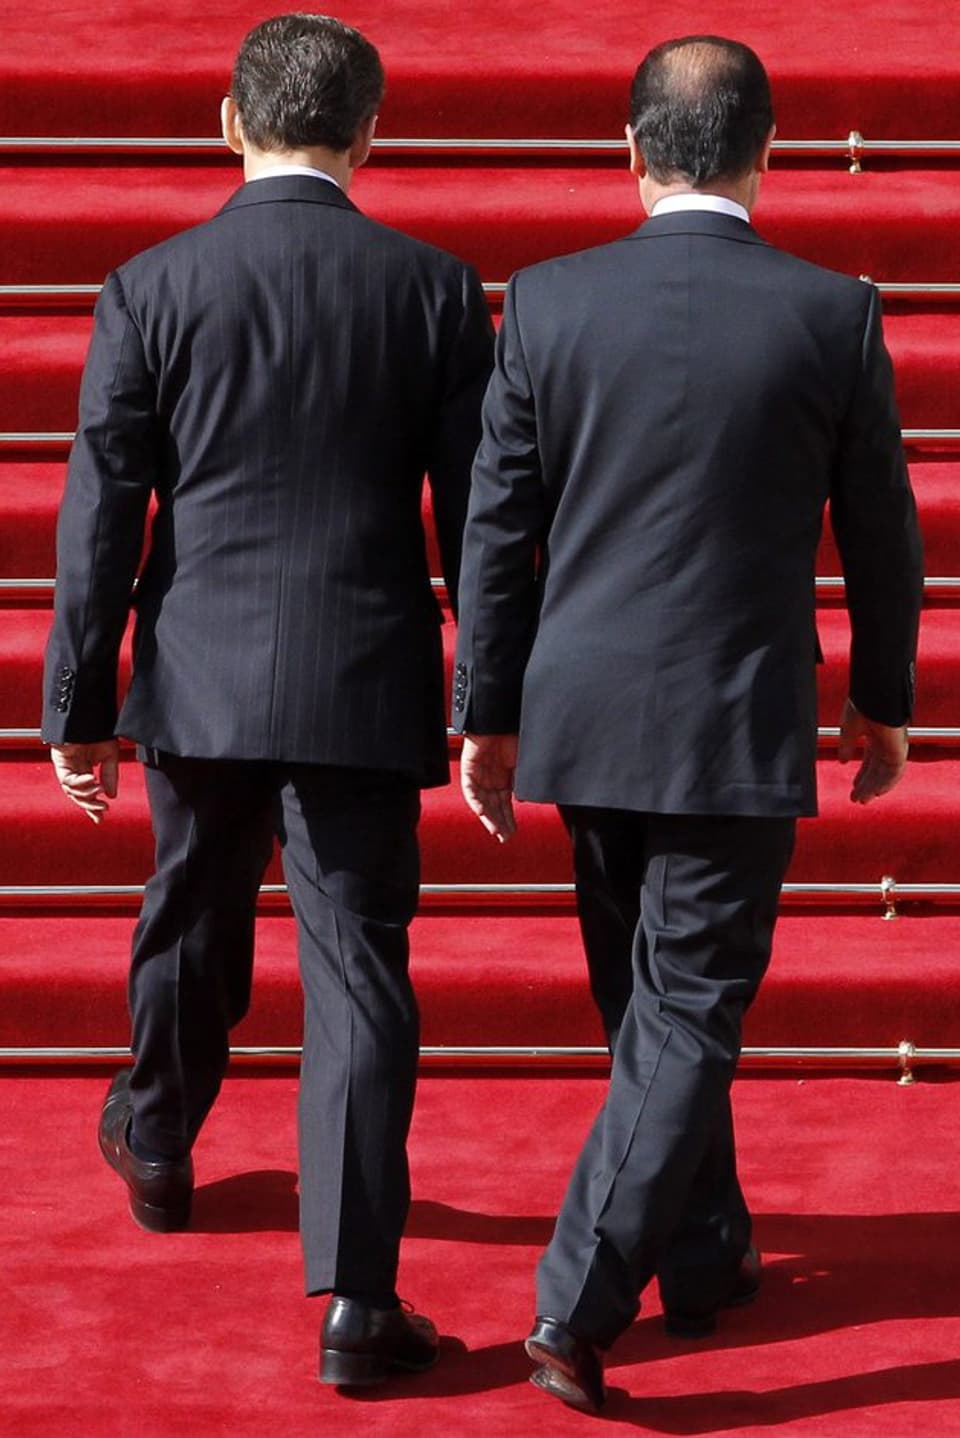 Hollande und Sarkozy stehen vor einer Treppe. Von hinten fotografiert.